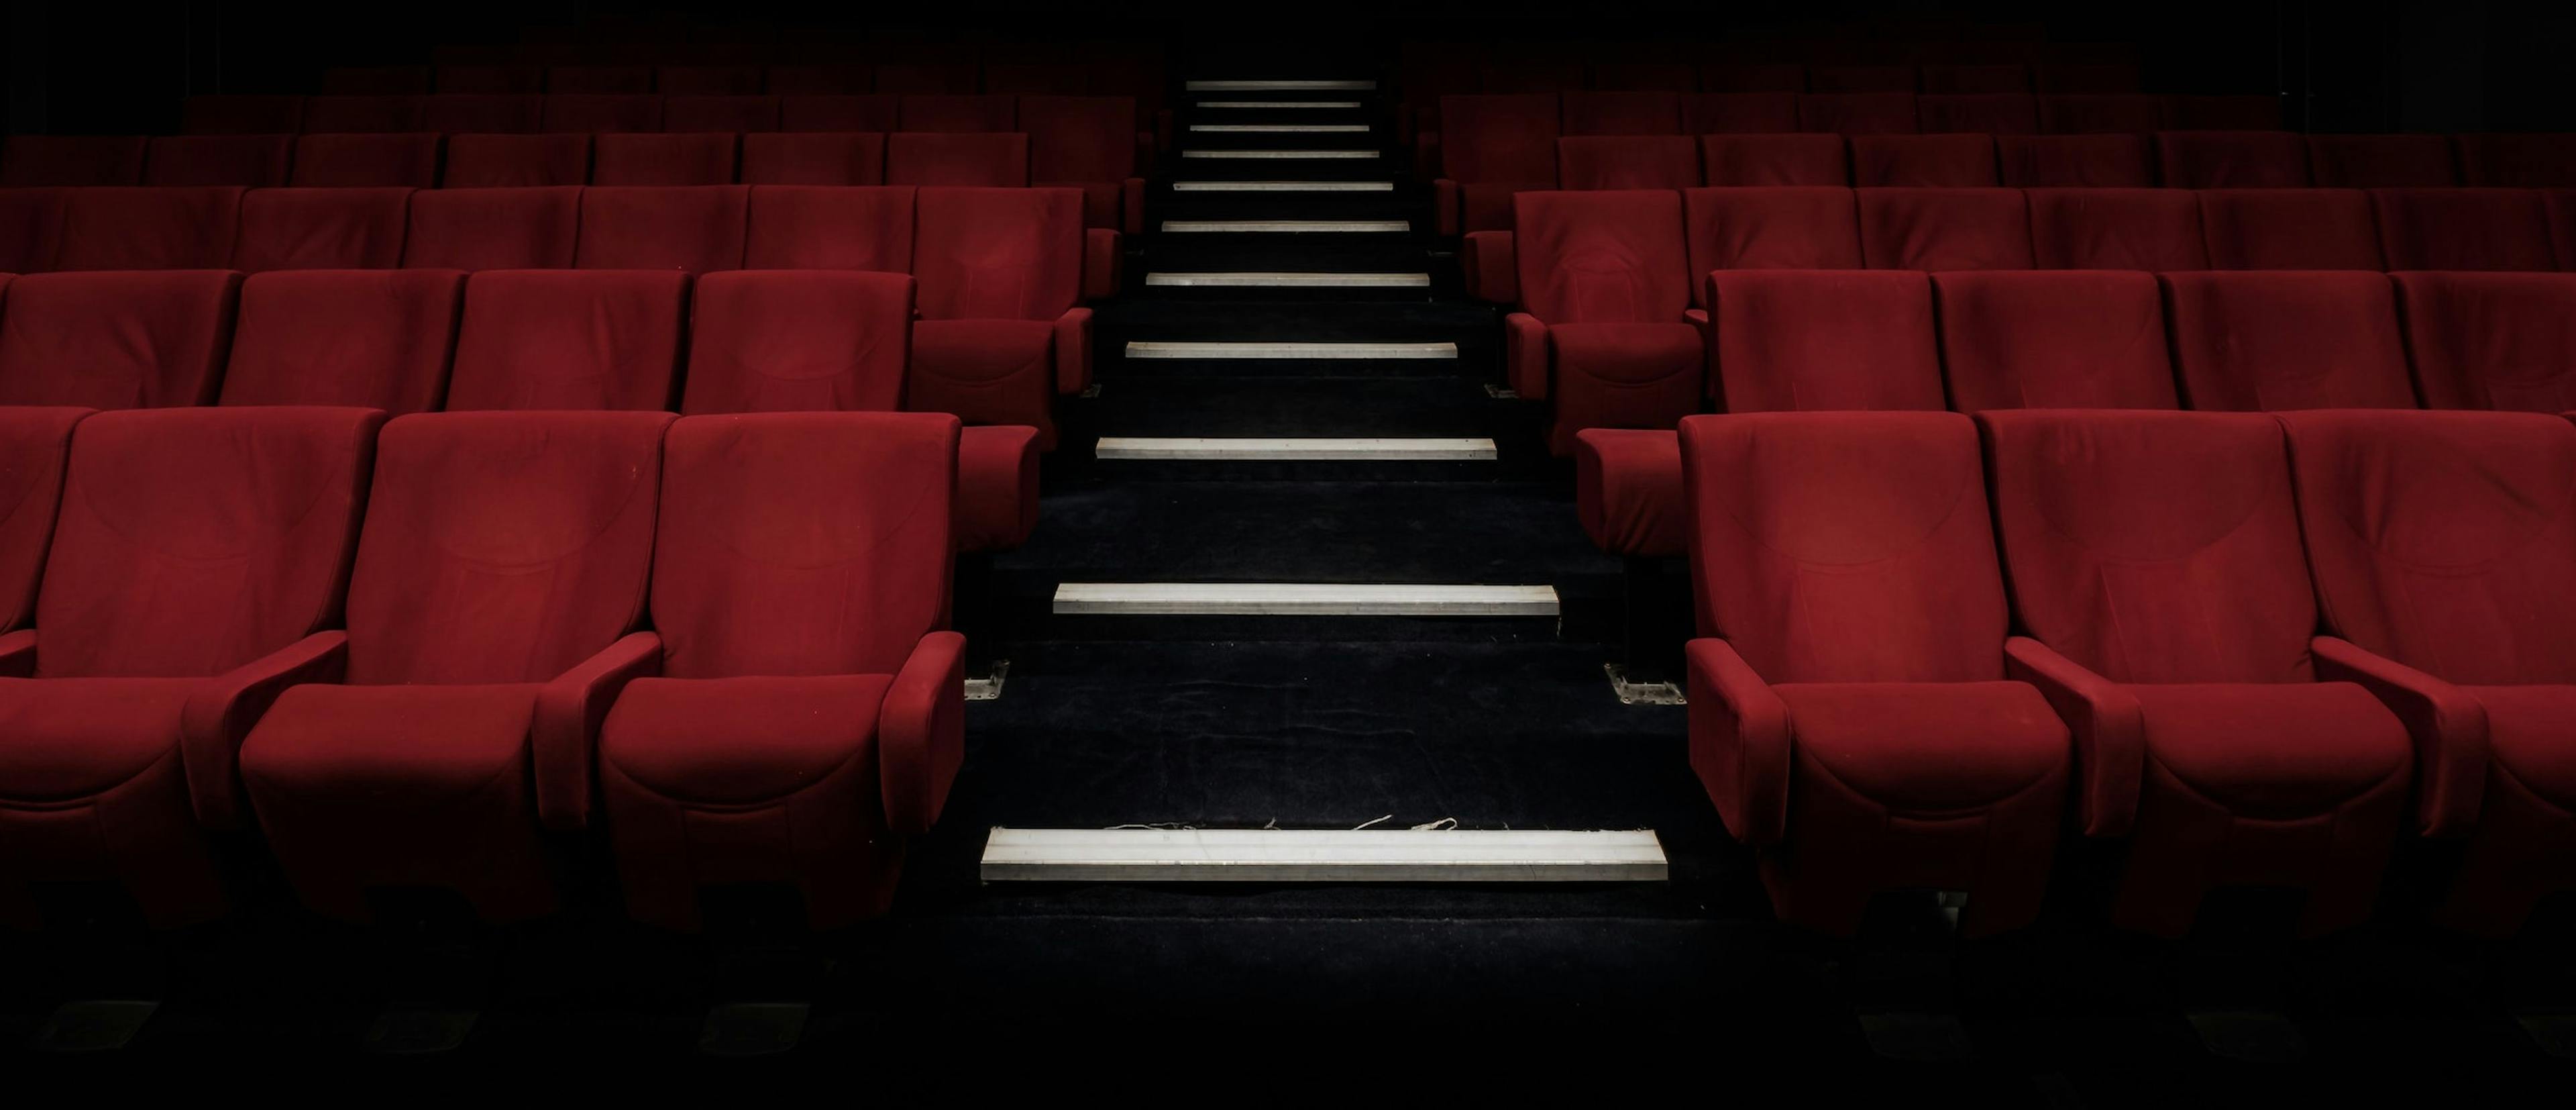 Imagen de archivo que muestra una sala de cine completamente vacía